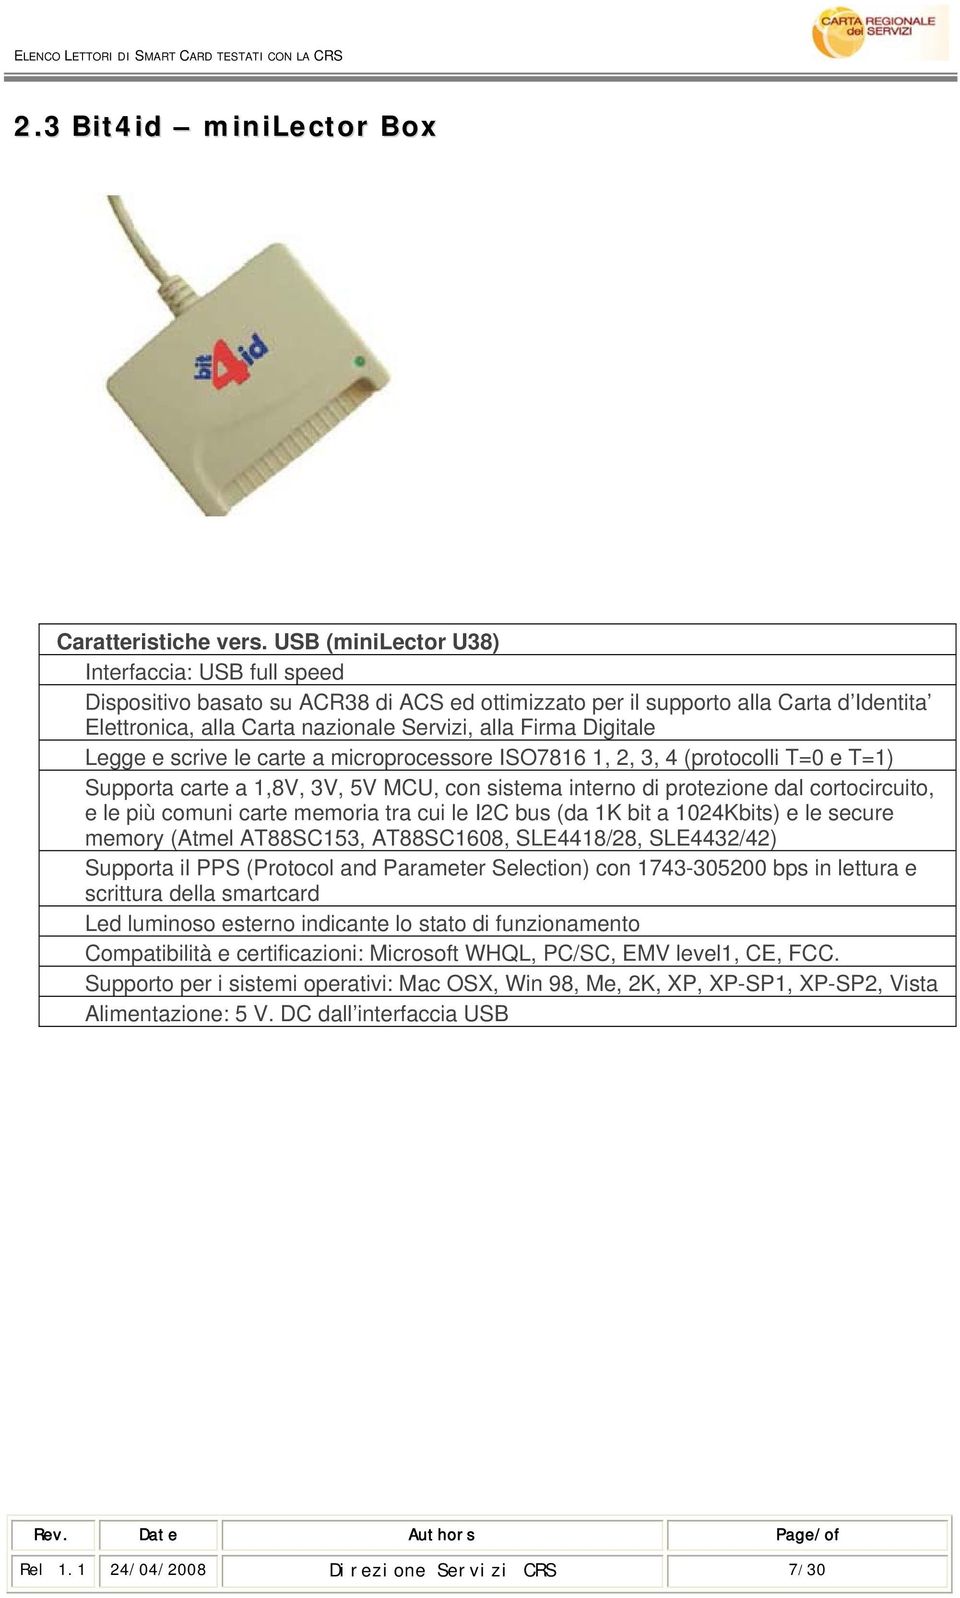 Legge e scrive le carte a microprocessore ISO7816 1, 2, 3, 4 (protocolli T=0 e T=1) Supporta carte a 1,8V, 3V, 5V MCU, con sistema interno di protezione dal cortocircuito, e le più comuni carte